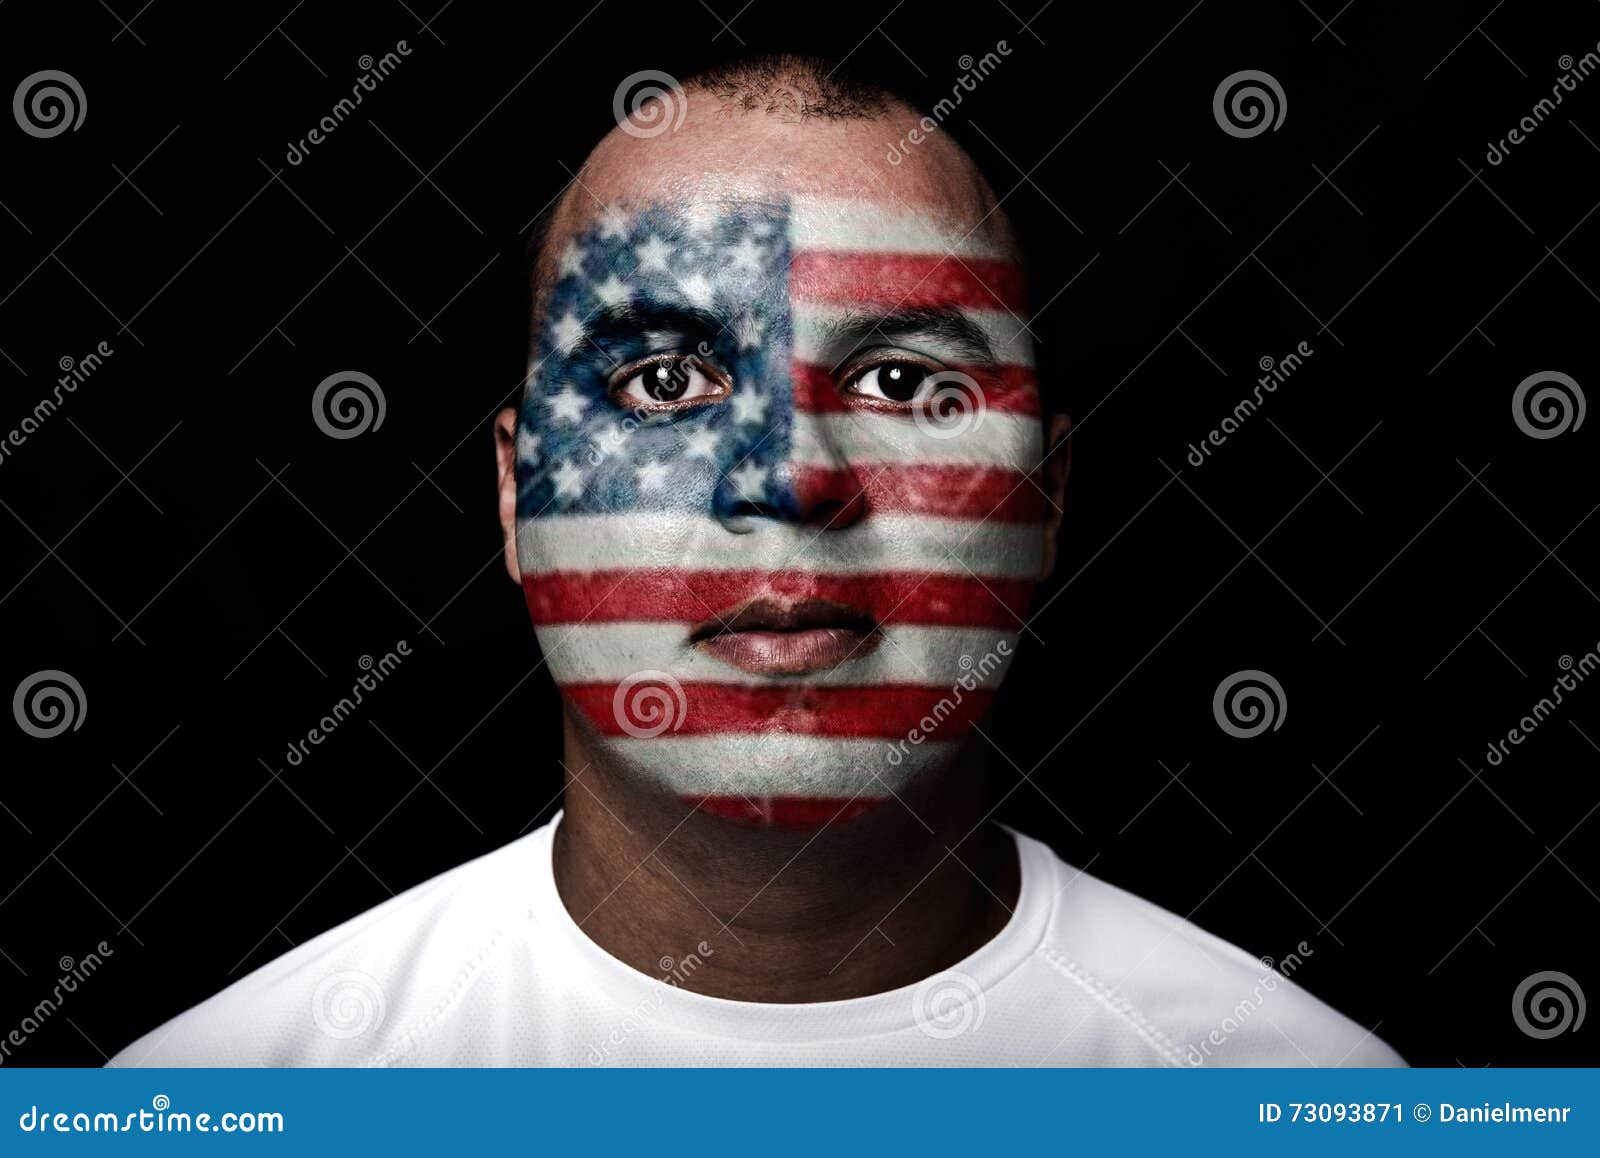 man with eeuu flag